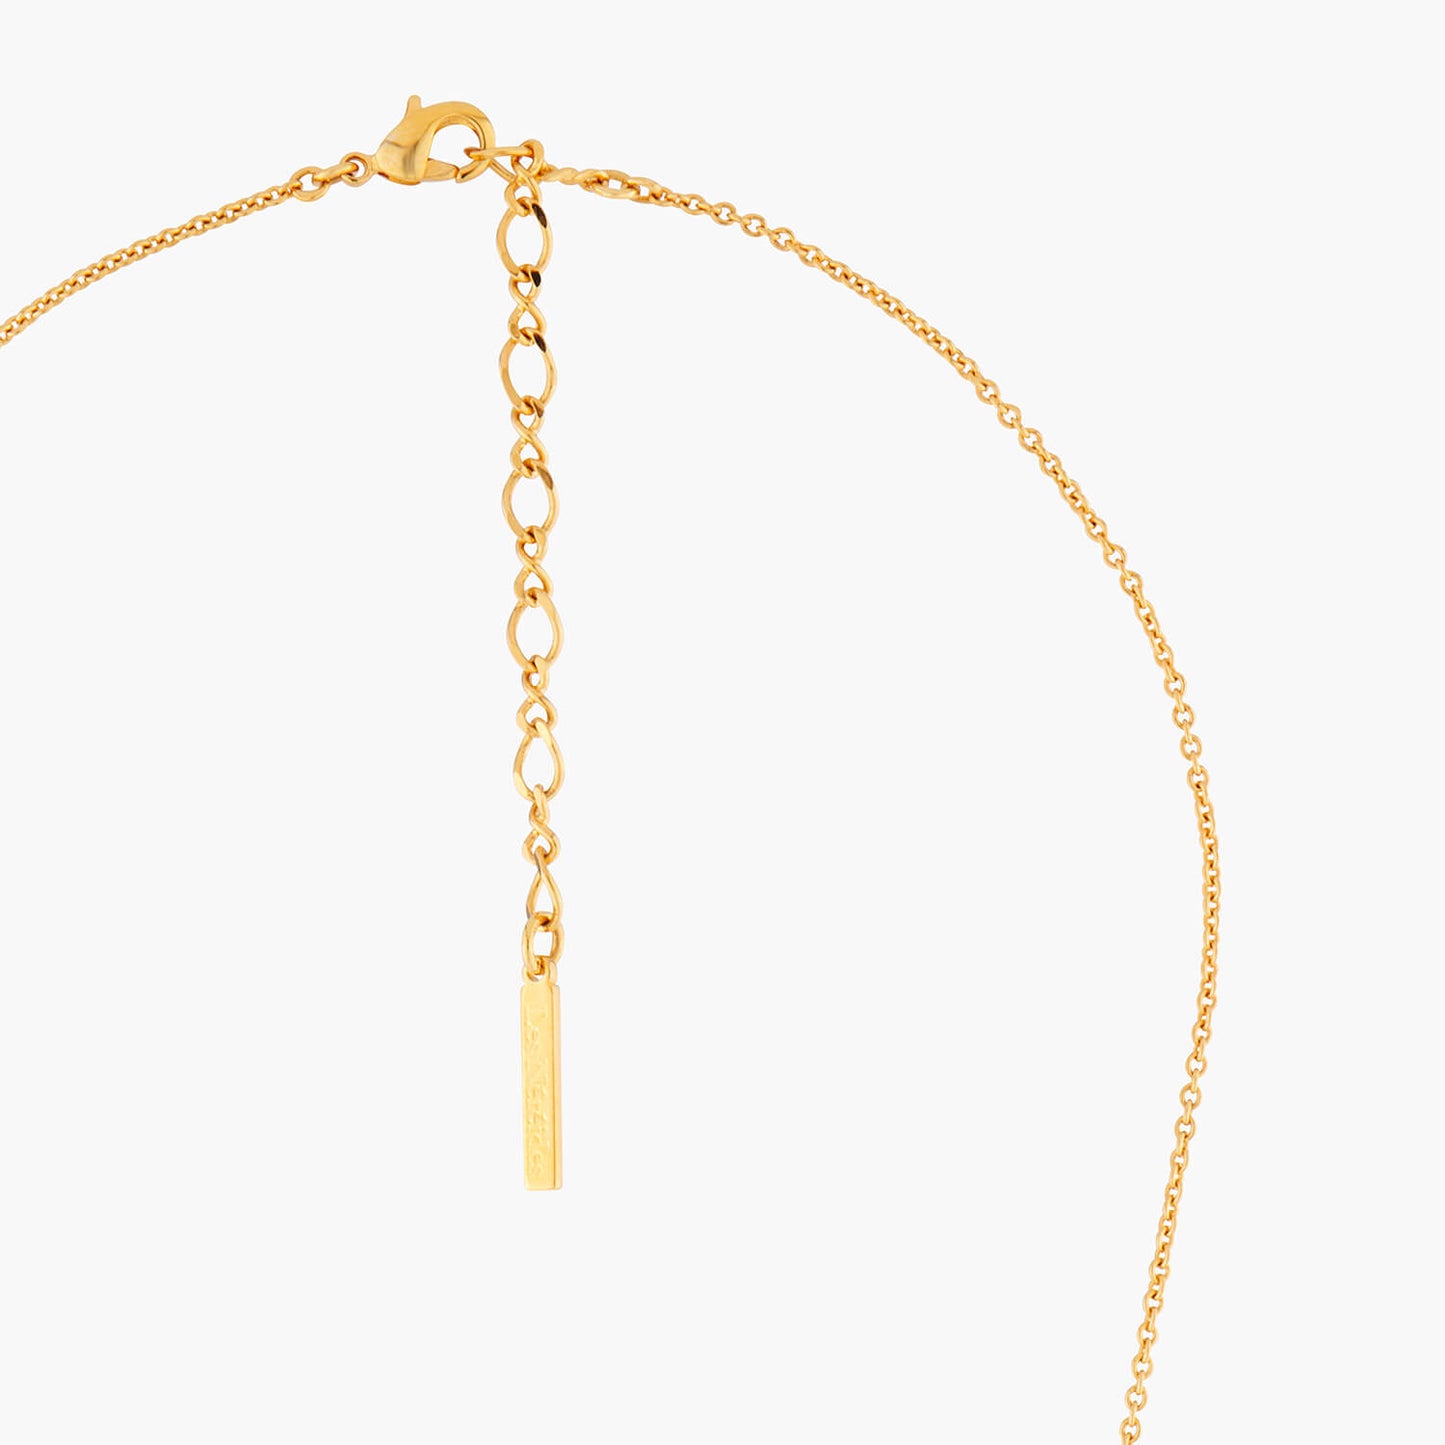 Golden Snowflakes Collar Necklace | AMSC3011